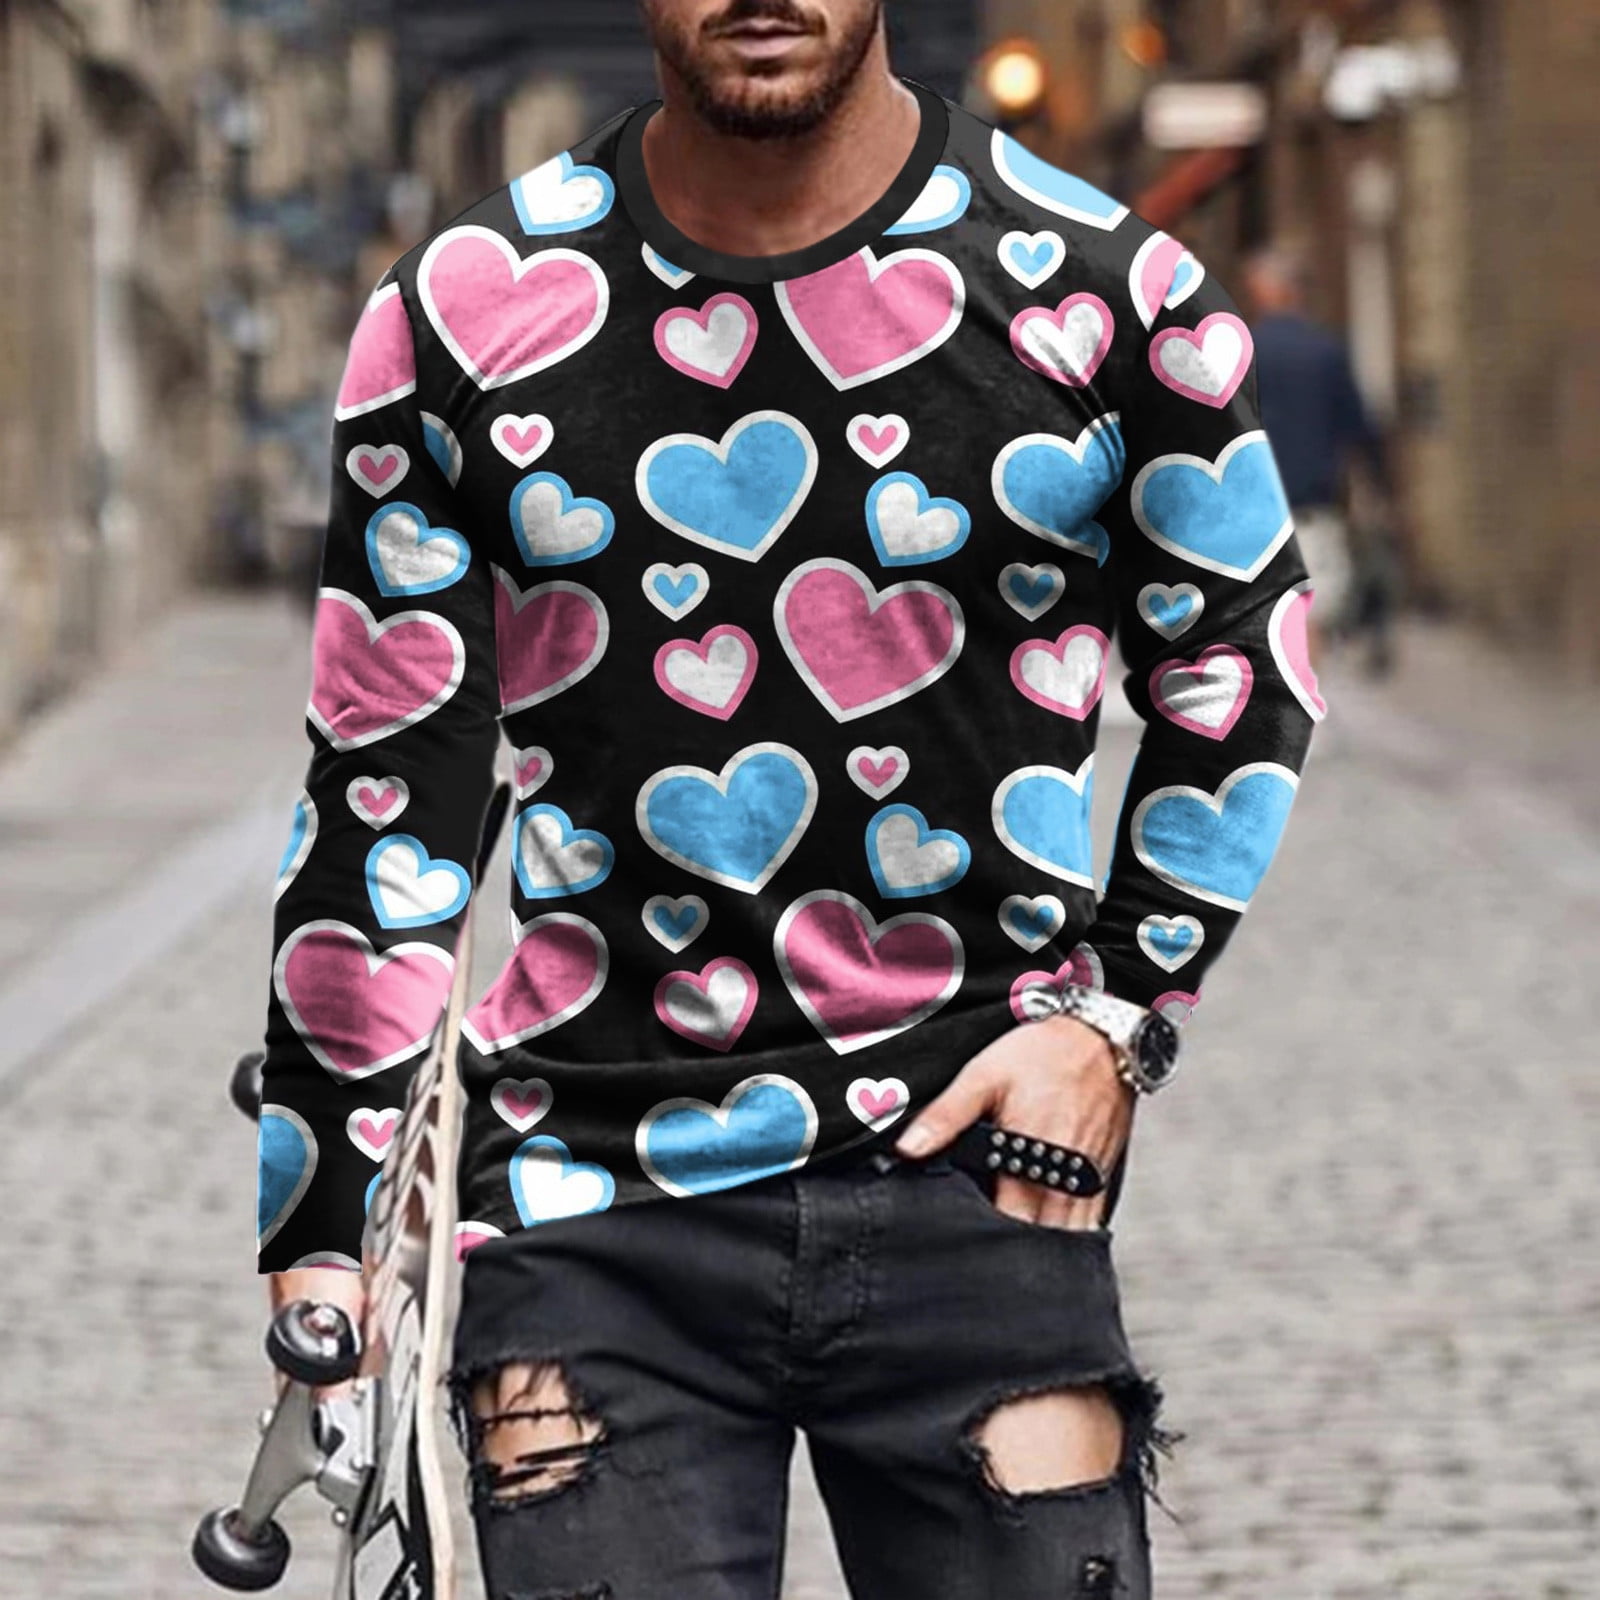 Official cheap Logo Heart Louis Vuitton T Shirt, hoodie, sweater